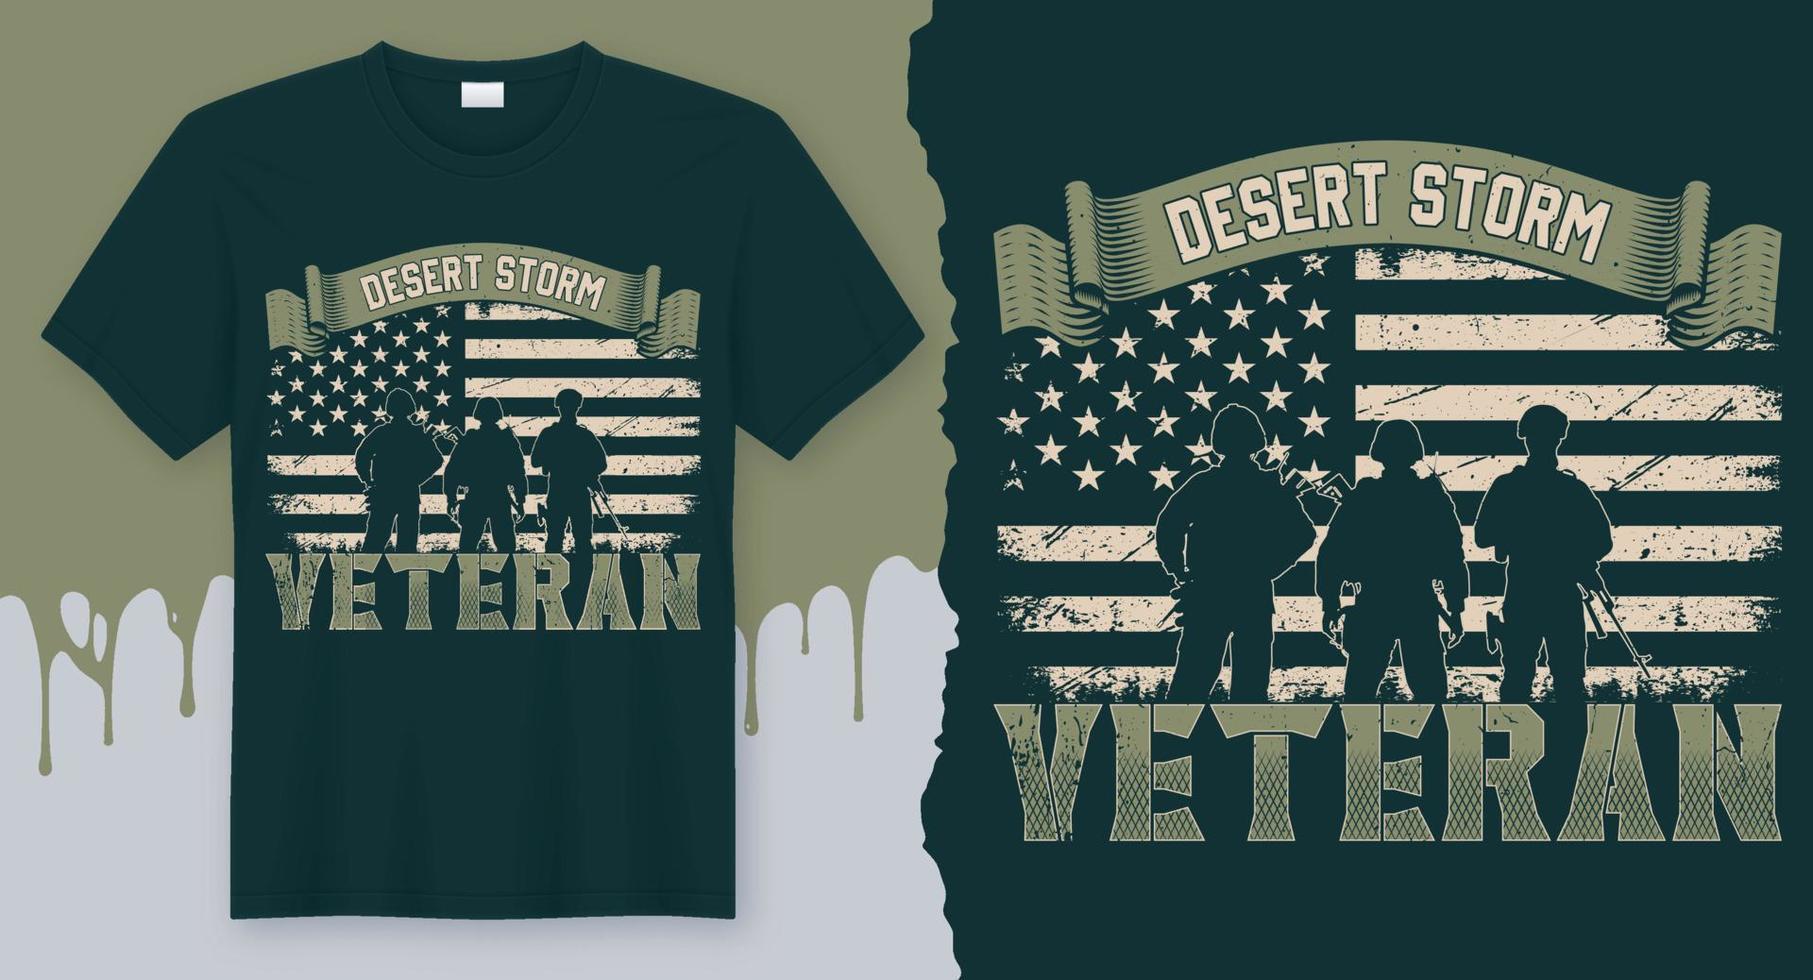 Desert Storm Veteran. Best Vector Design for Veteran T-Shirt